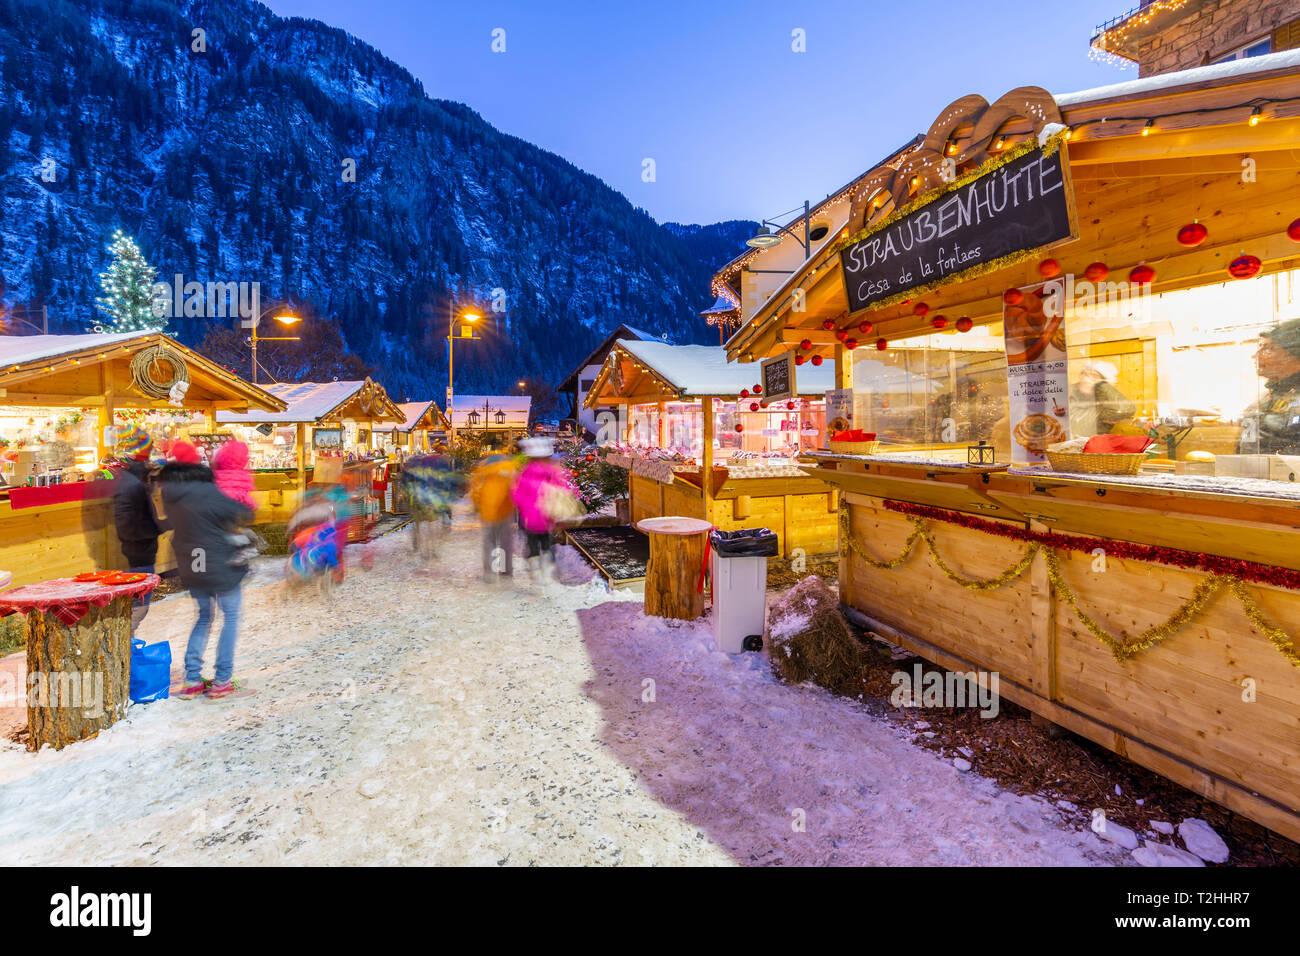 Christmas market at sunset in Campitello di Fassa, Val di Fassa, Trentino, Italy, Europe Stock Photo